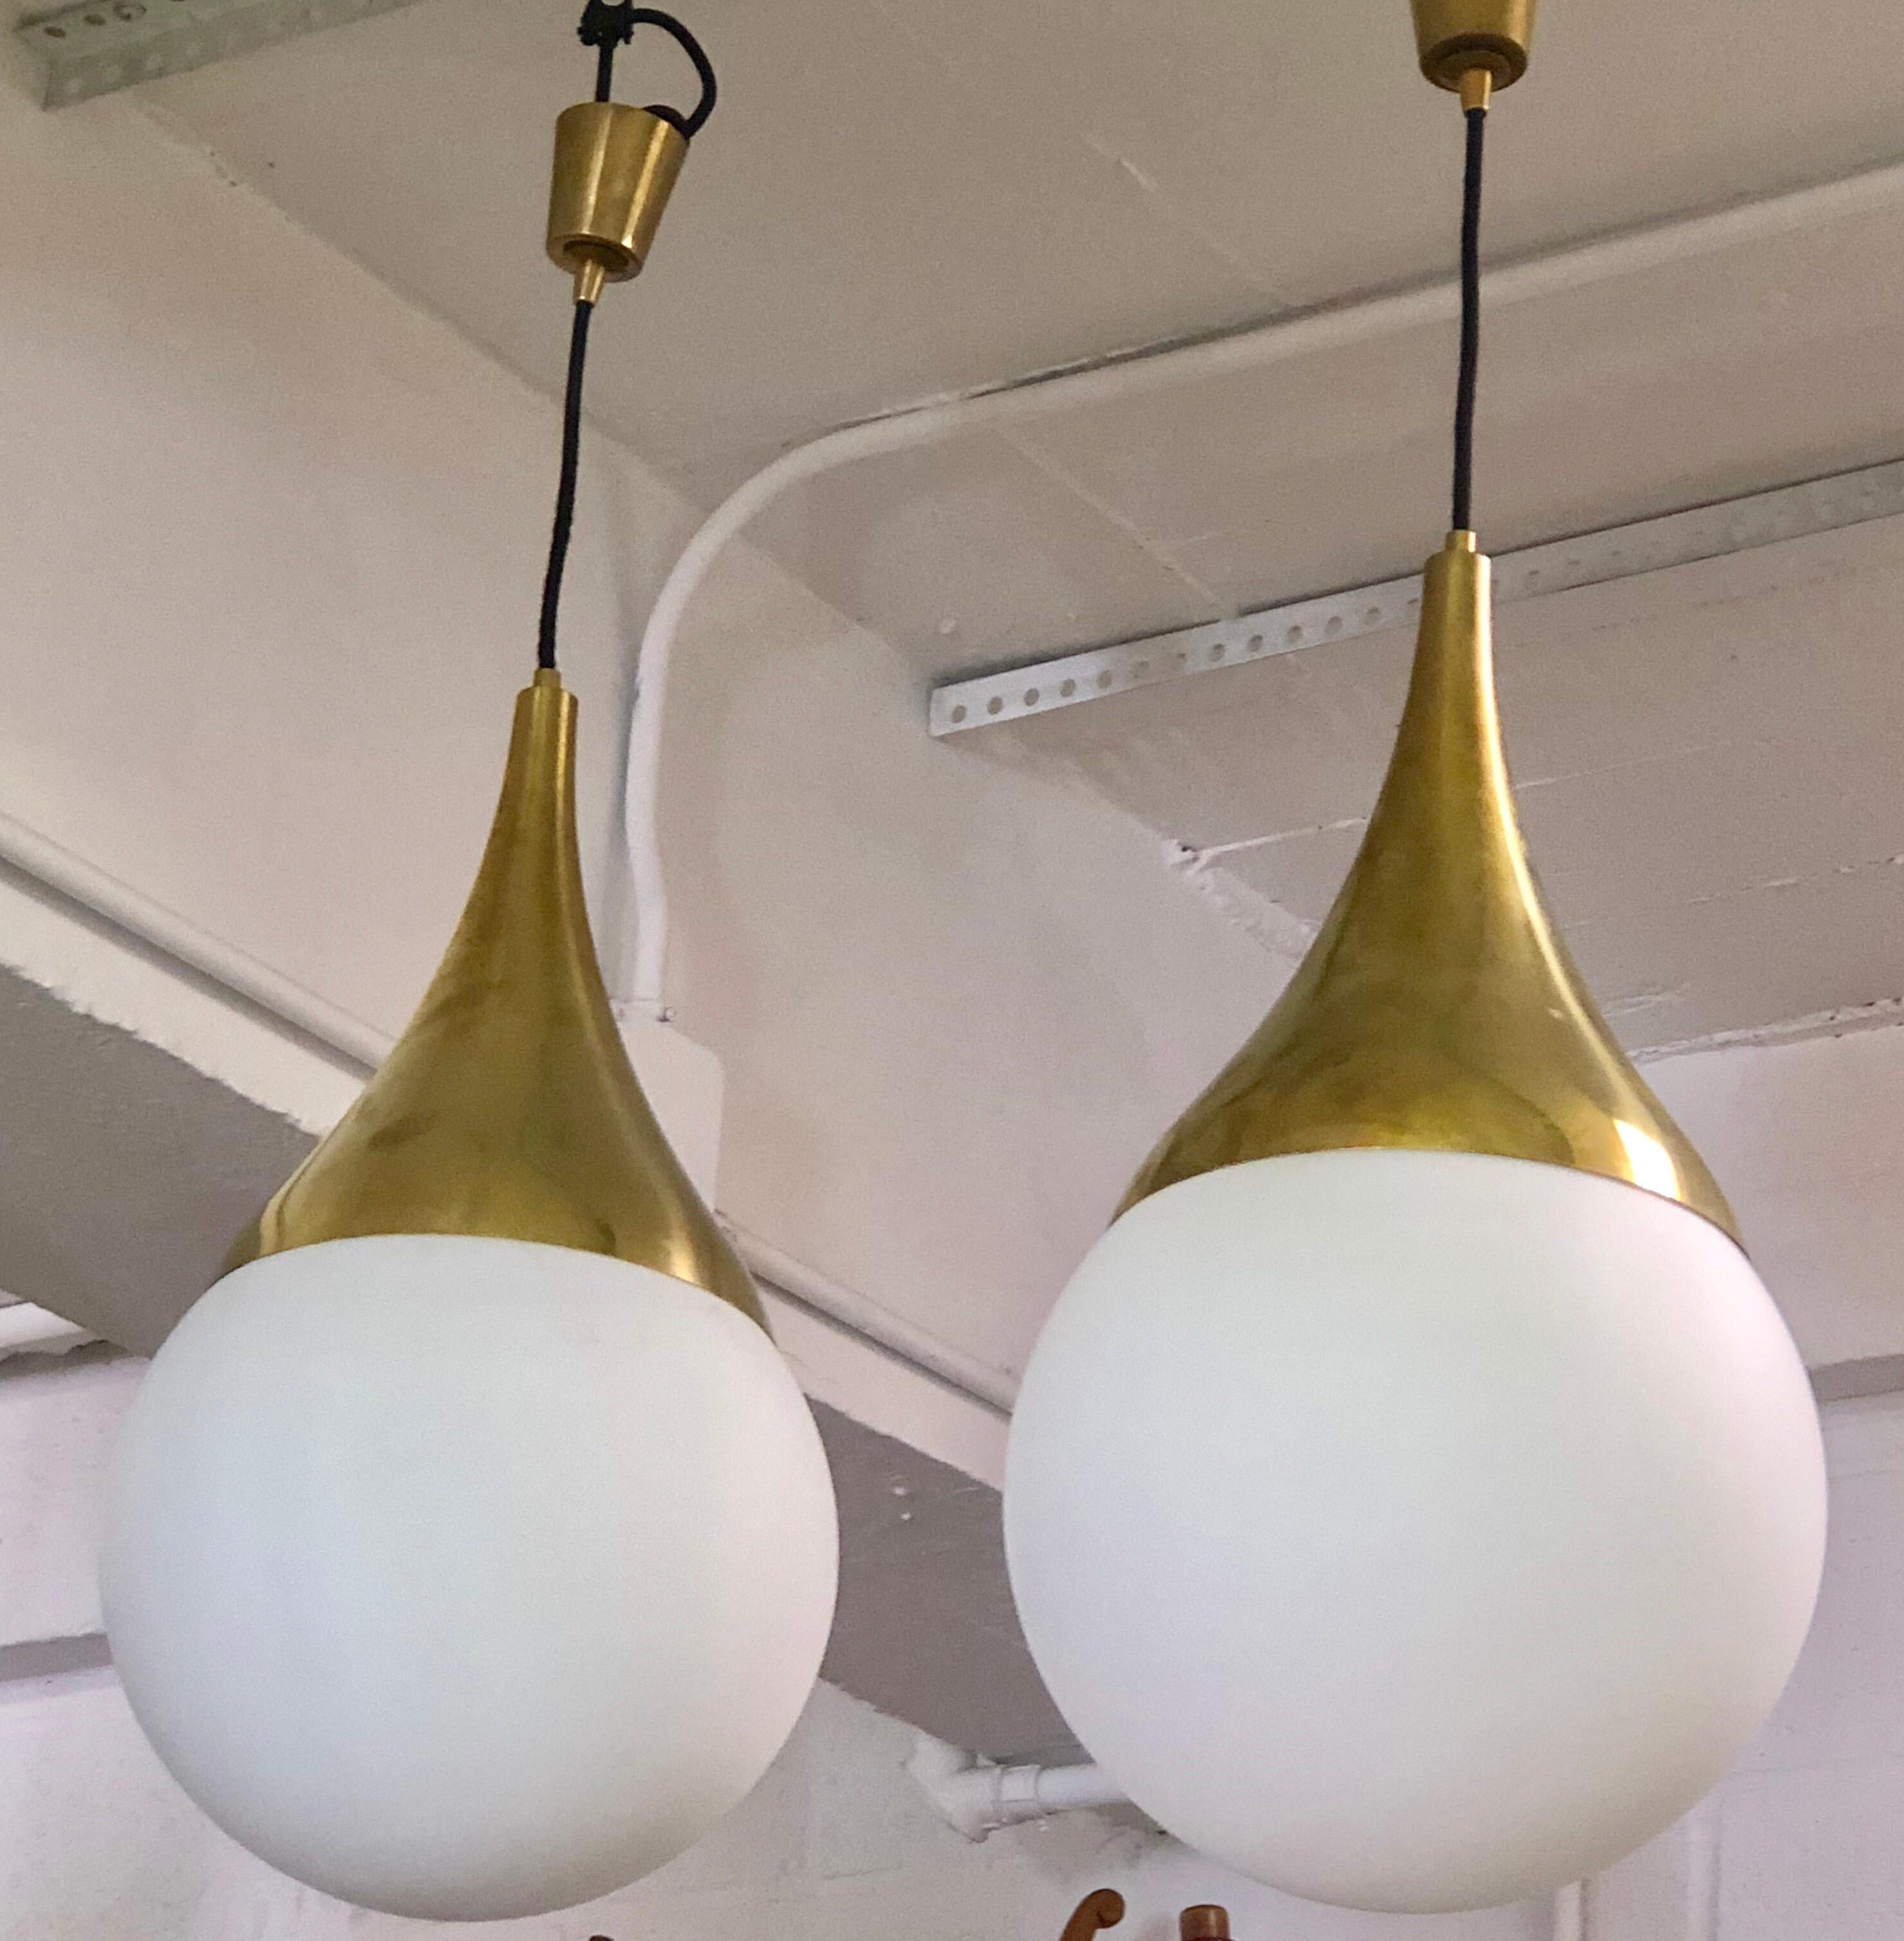 2 Rares pendentifs, lustres ou lanternes en laiton massif et verre opalin blanc soufflé par Max Ingrand pour Fontana Arte. Les pièces sont des chefs-d'œuvre de design aux formes intemporelles, élégamment conçues et exécutées avec des matériaux et un